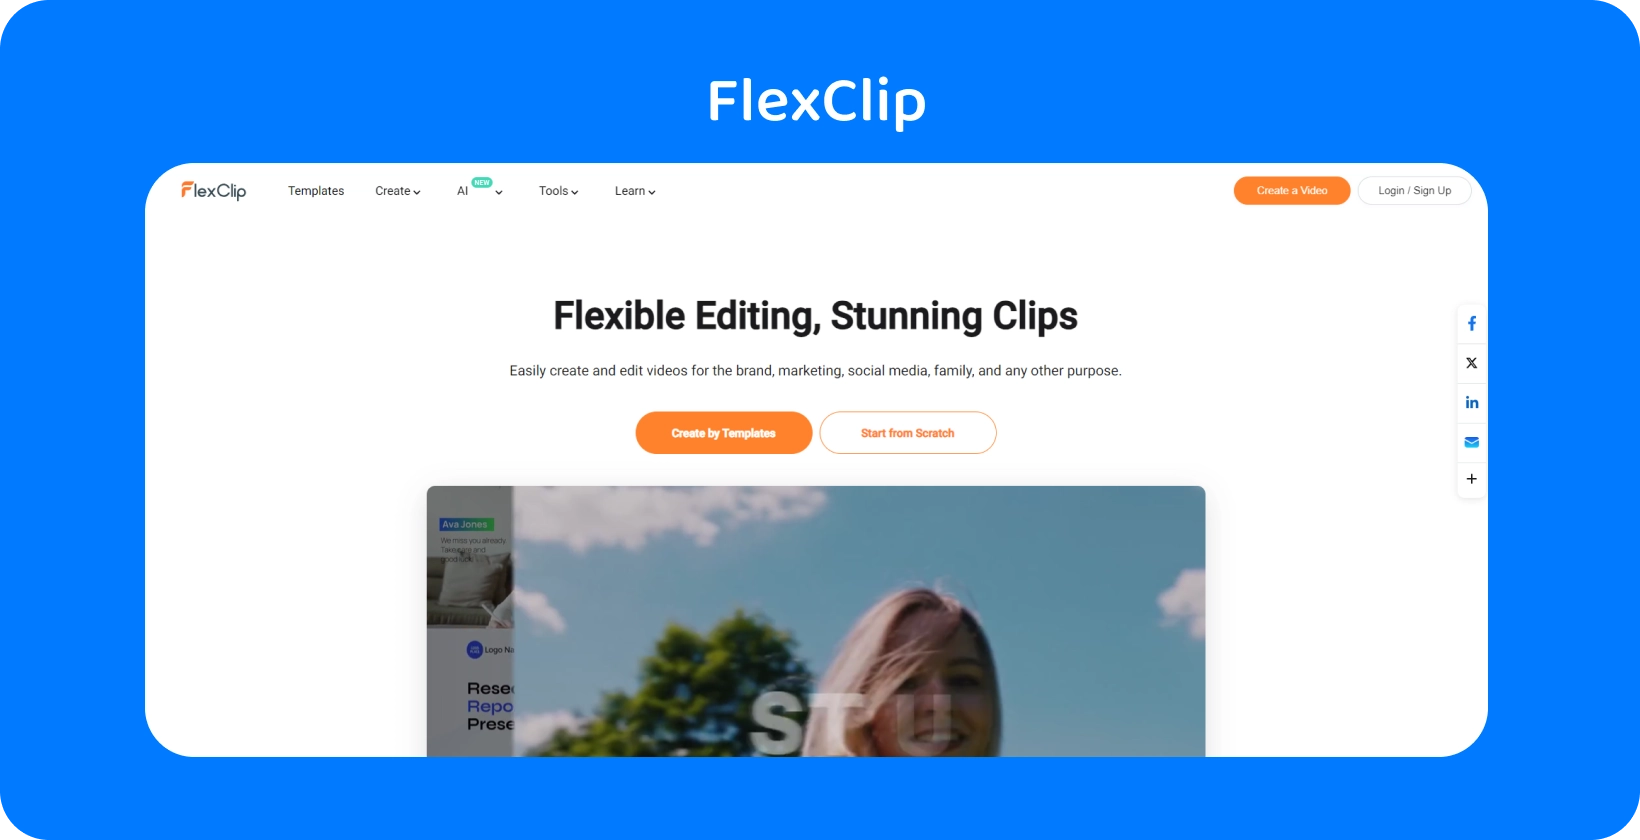 FlexClip'nin Text to Speech Video Maker arayüzü, metni gerçekçi AI konuşmasına dönüştürmenin basit ve etkili bir yolunu gösterir.